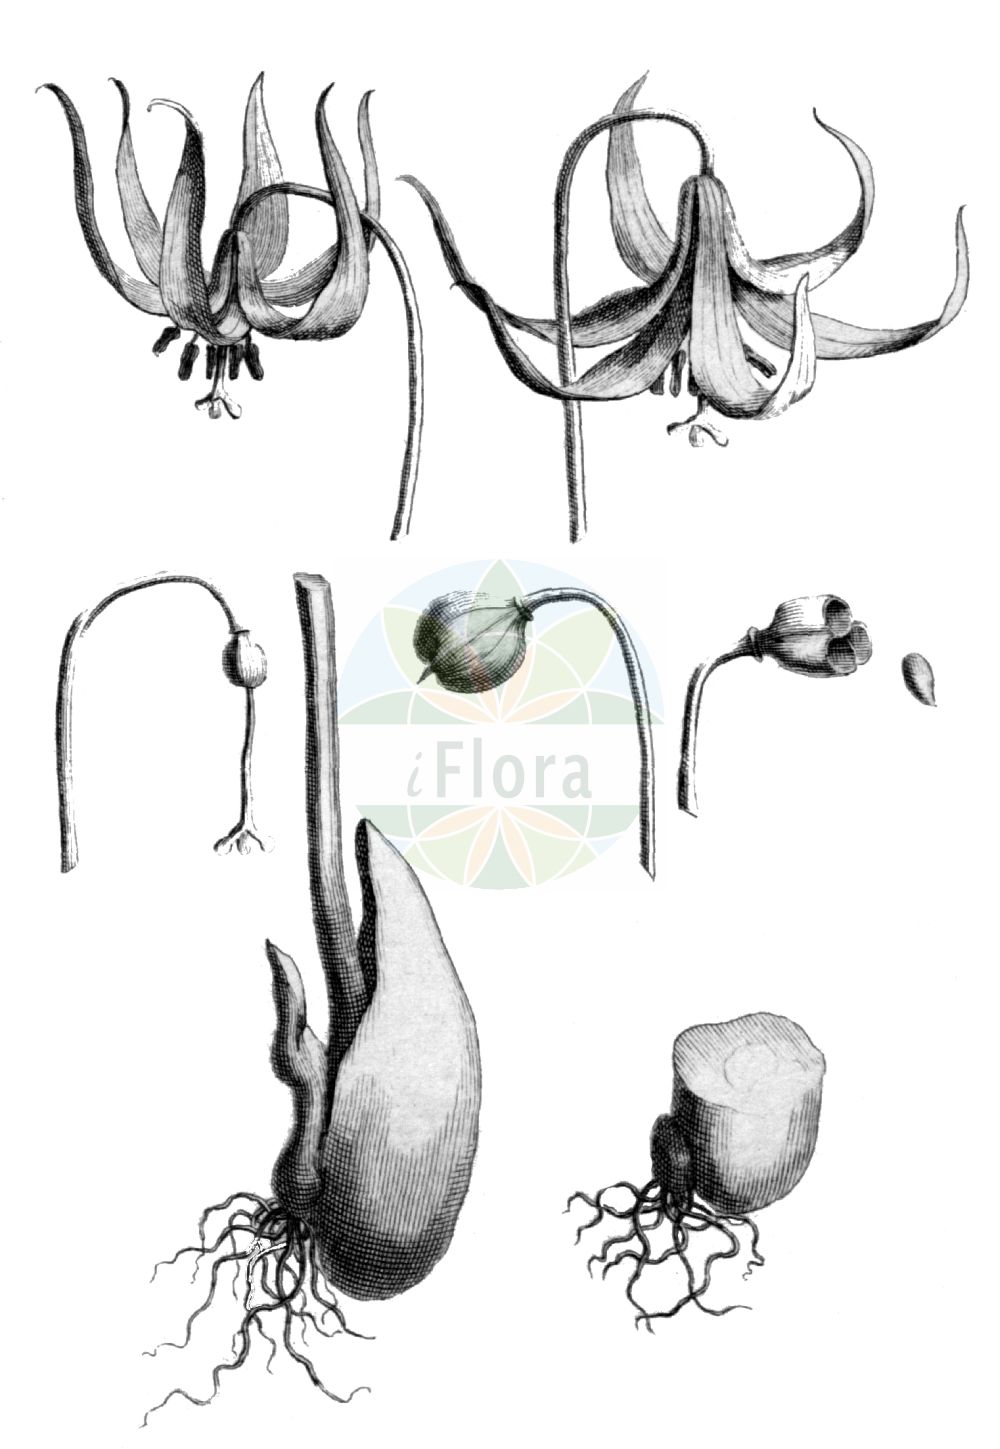 Historische Abbildung von Erythronium dens-canis. Das Bild zeigt Blatt, Bluete, Frucht und Same. ---- Historical Drawing of Erythronium dens-canis. The image is showing leaf, flower, fruit and seed.(Erythronium dens-canis,Erythronium bifidum,Erythronium bulbosum,Erythronium caninum,Erythronium dens-canis,Erythronium latifolium,Erythronium longifolium,Erythronium maculatum,Erythronium maculosum,Erythronium obtusiflorum,Erythronium ovatifolium,Erythronium vernale,Erythronium,Liliaceae,Liliengewächse,Lily family,Blatt,Bluete,Frucht,Same,leaf,flower,fruit,seed,de Tournefort (1700-1703))